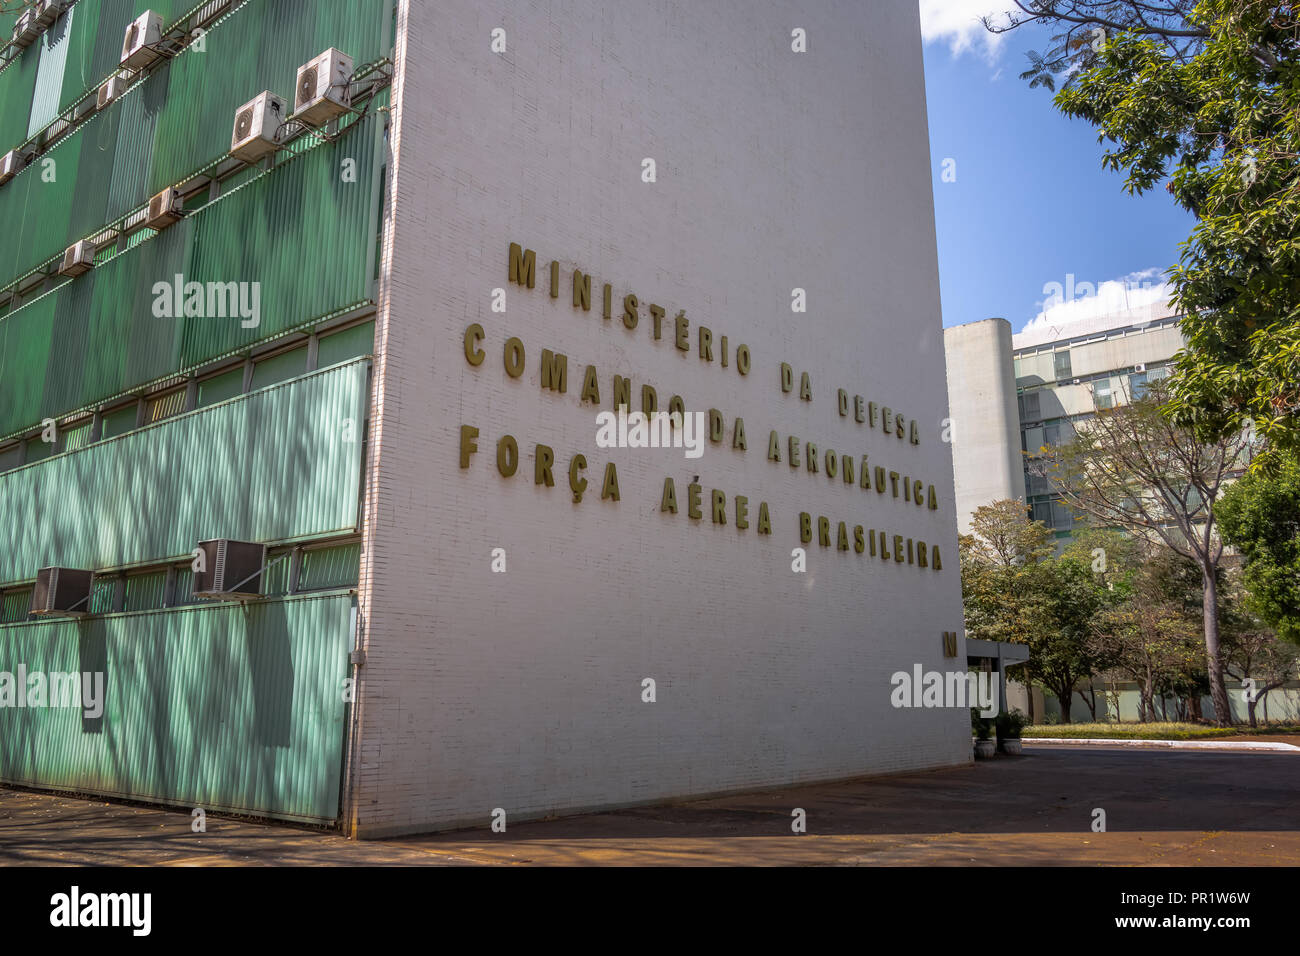 Ministère de la défense et de l'Armée de l'air brésilienne - Brasilia, District Fédéral, Brésil Banque D'Images